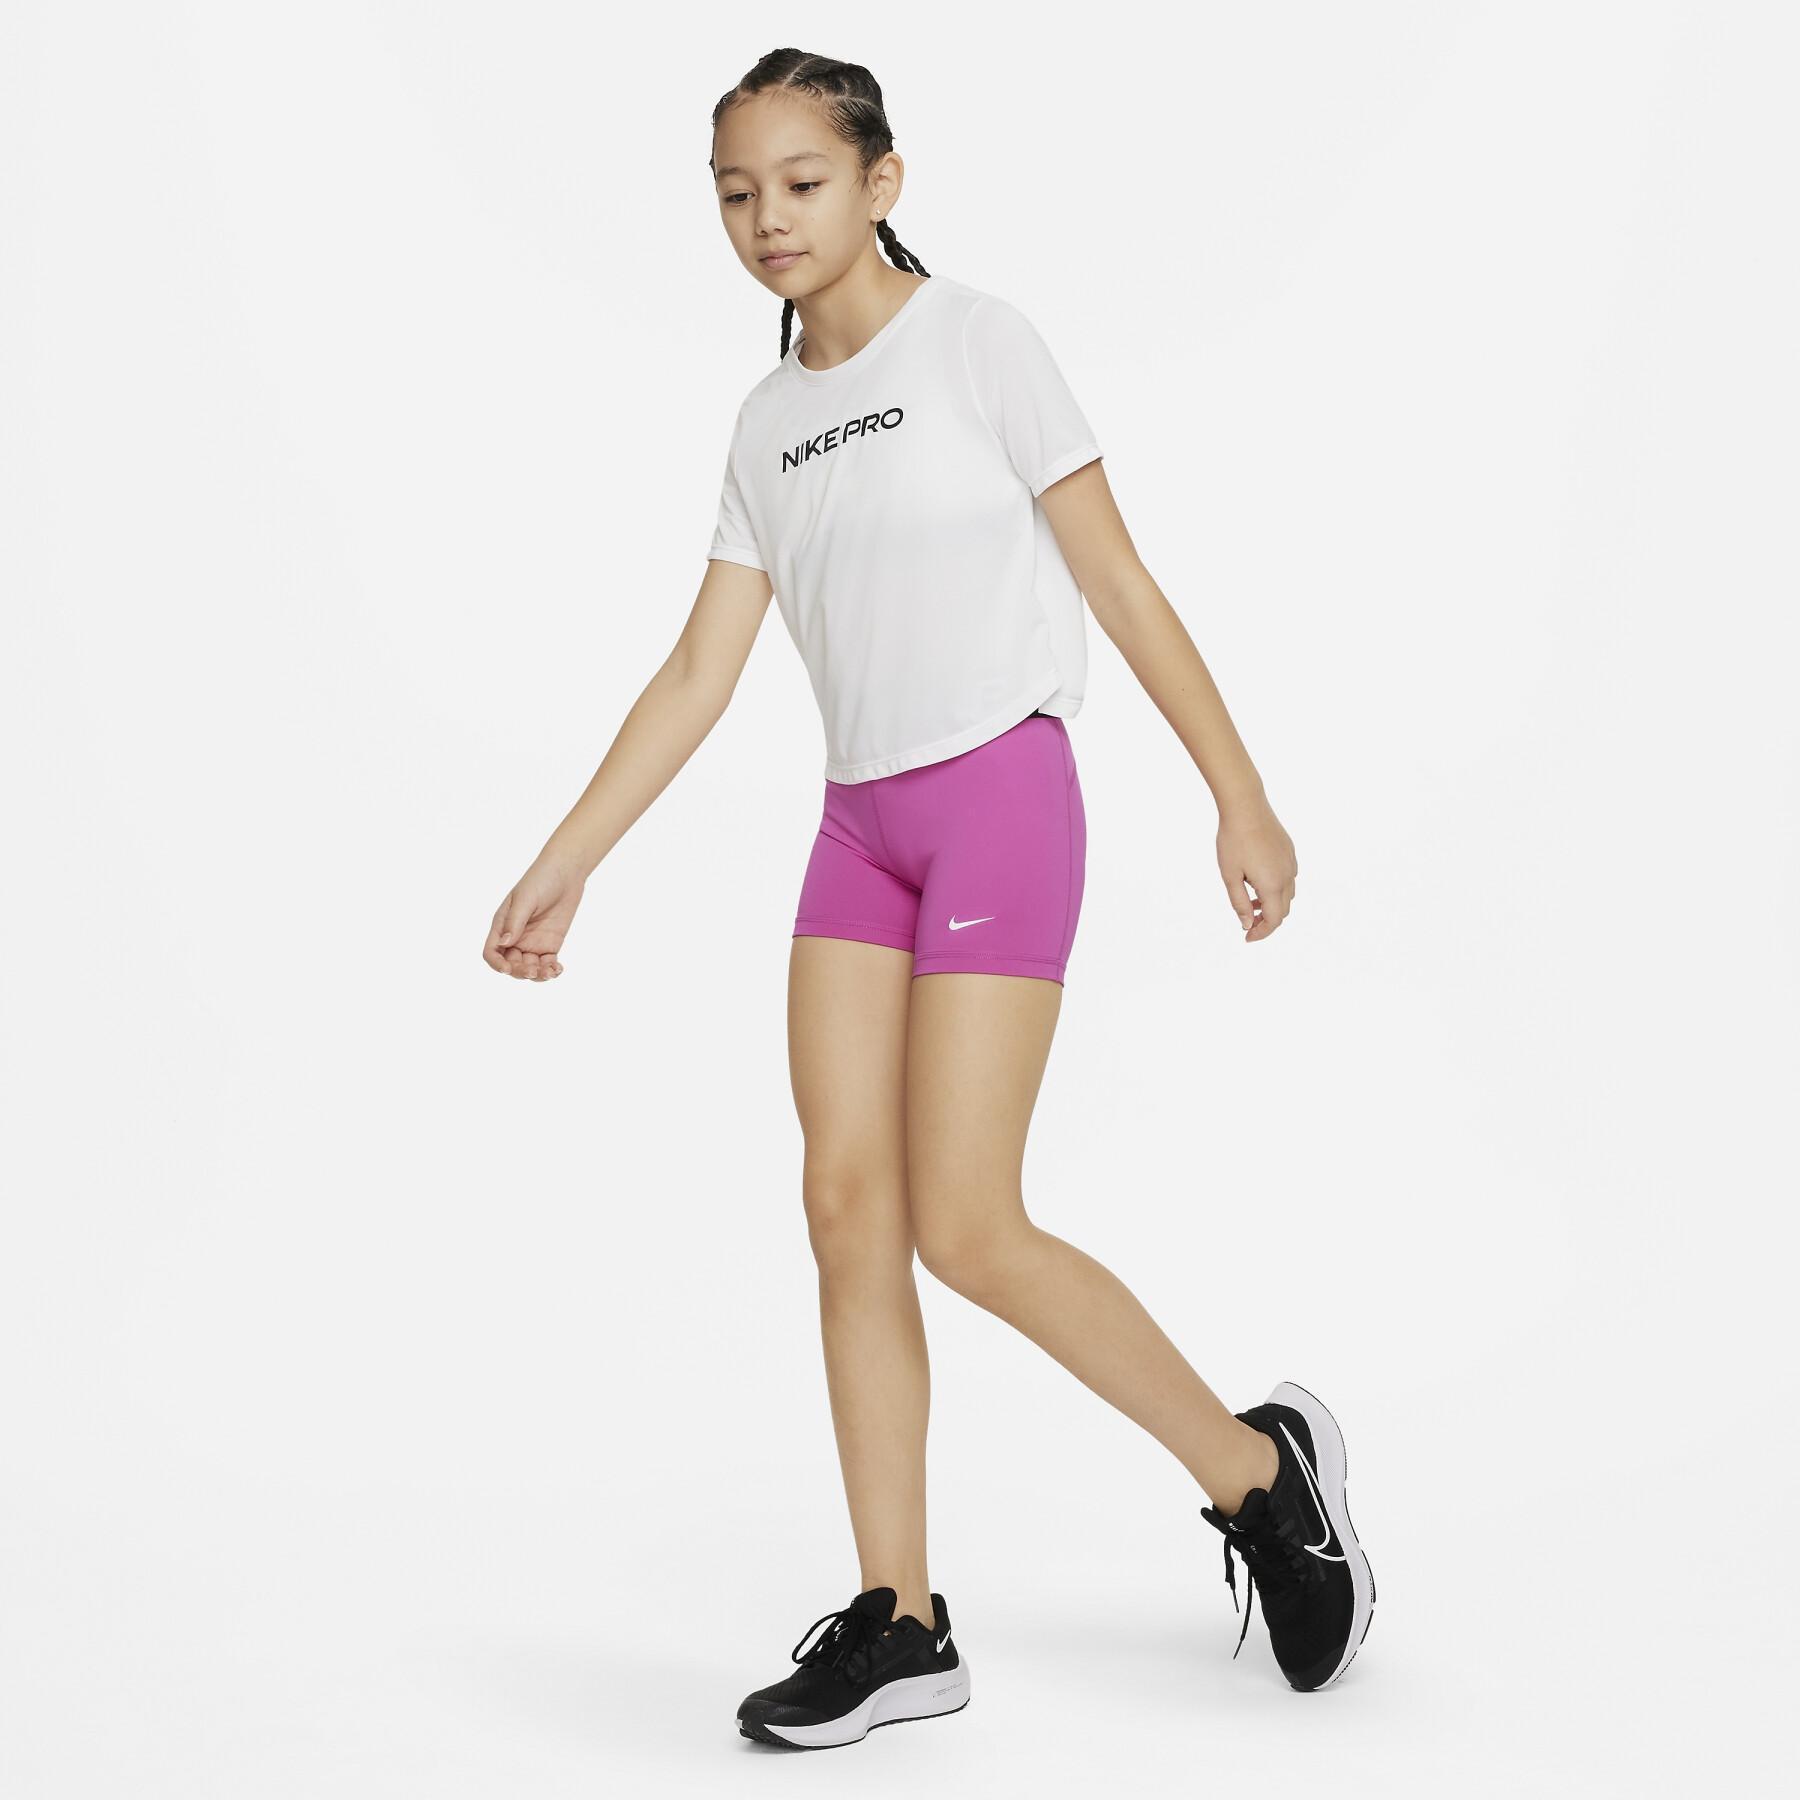 Calções para raparigas Nike Pro